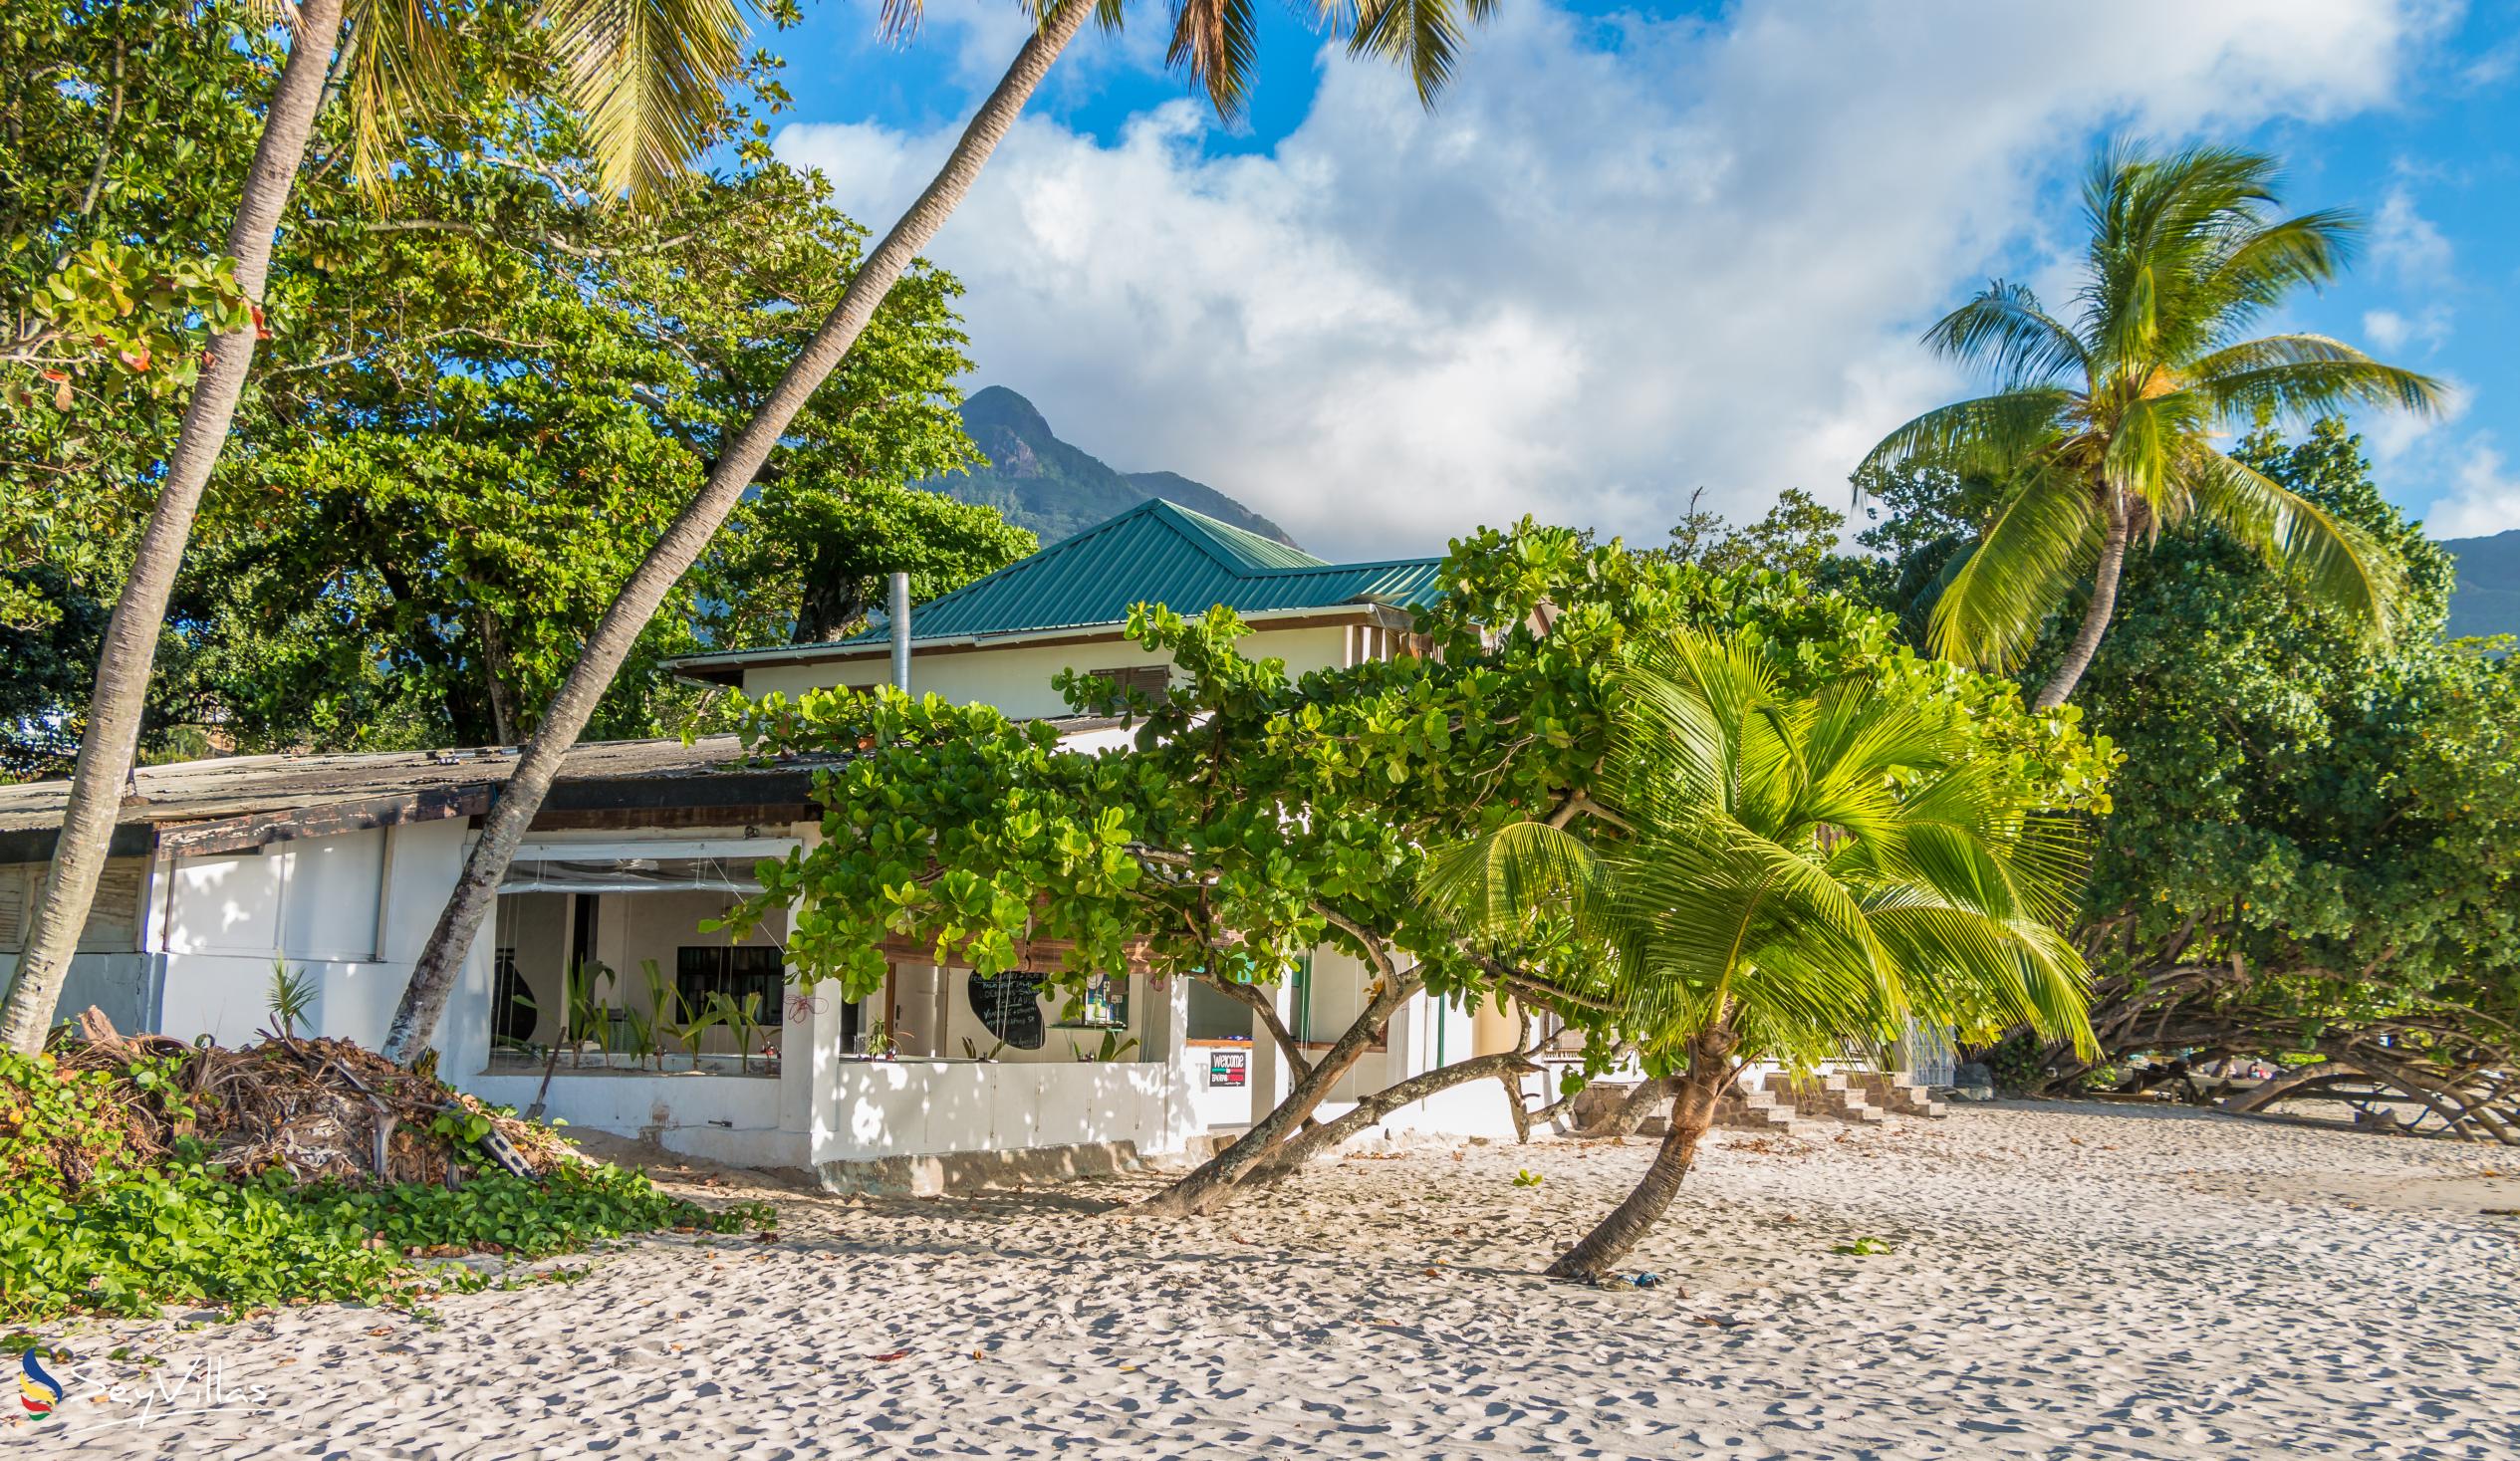 Foto 17: Villa Roscia - Plages - Mahé (Seychelles)